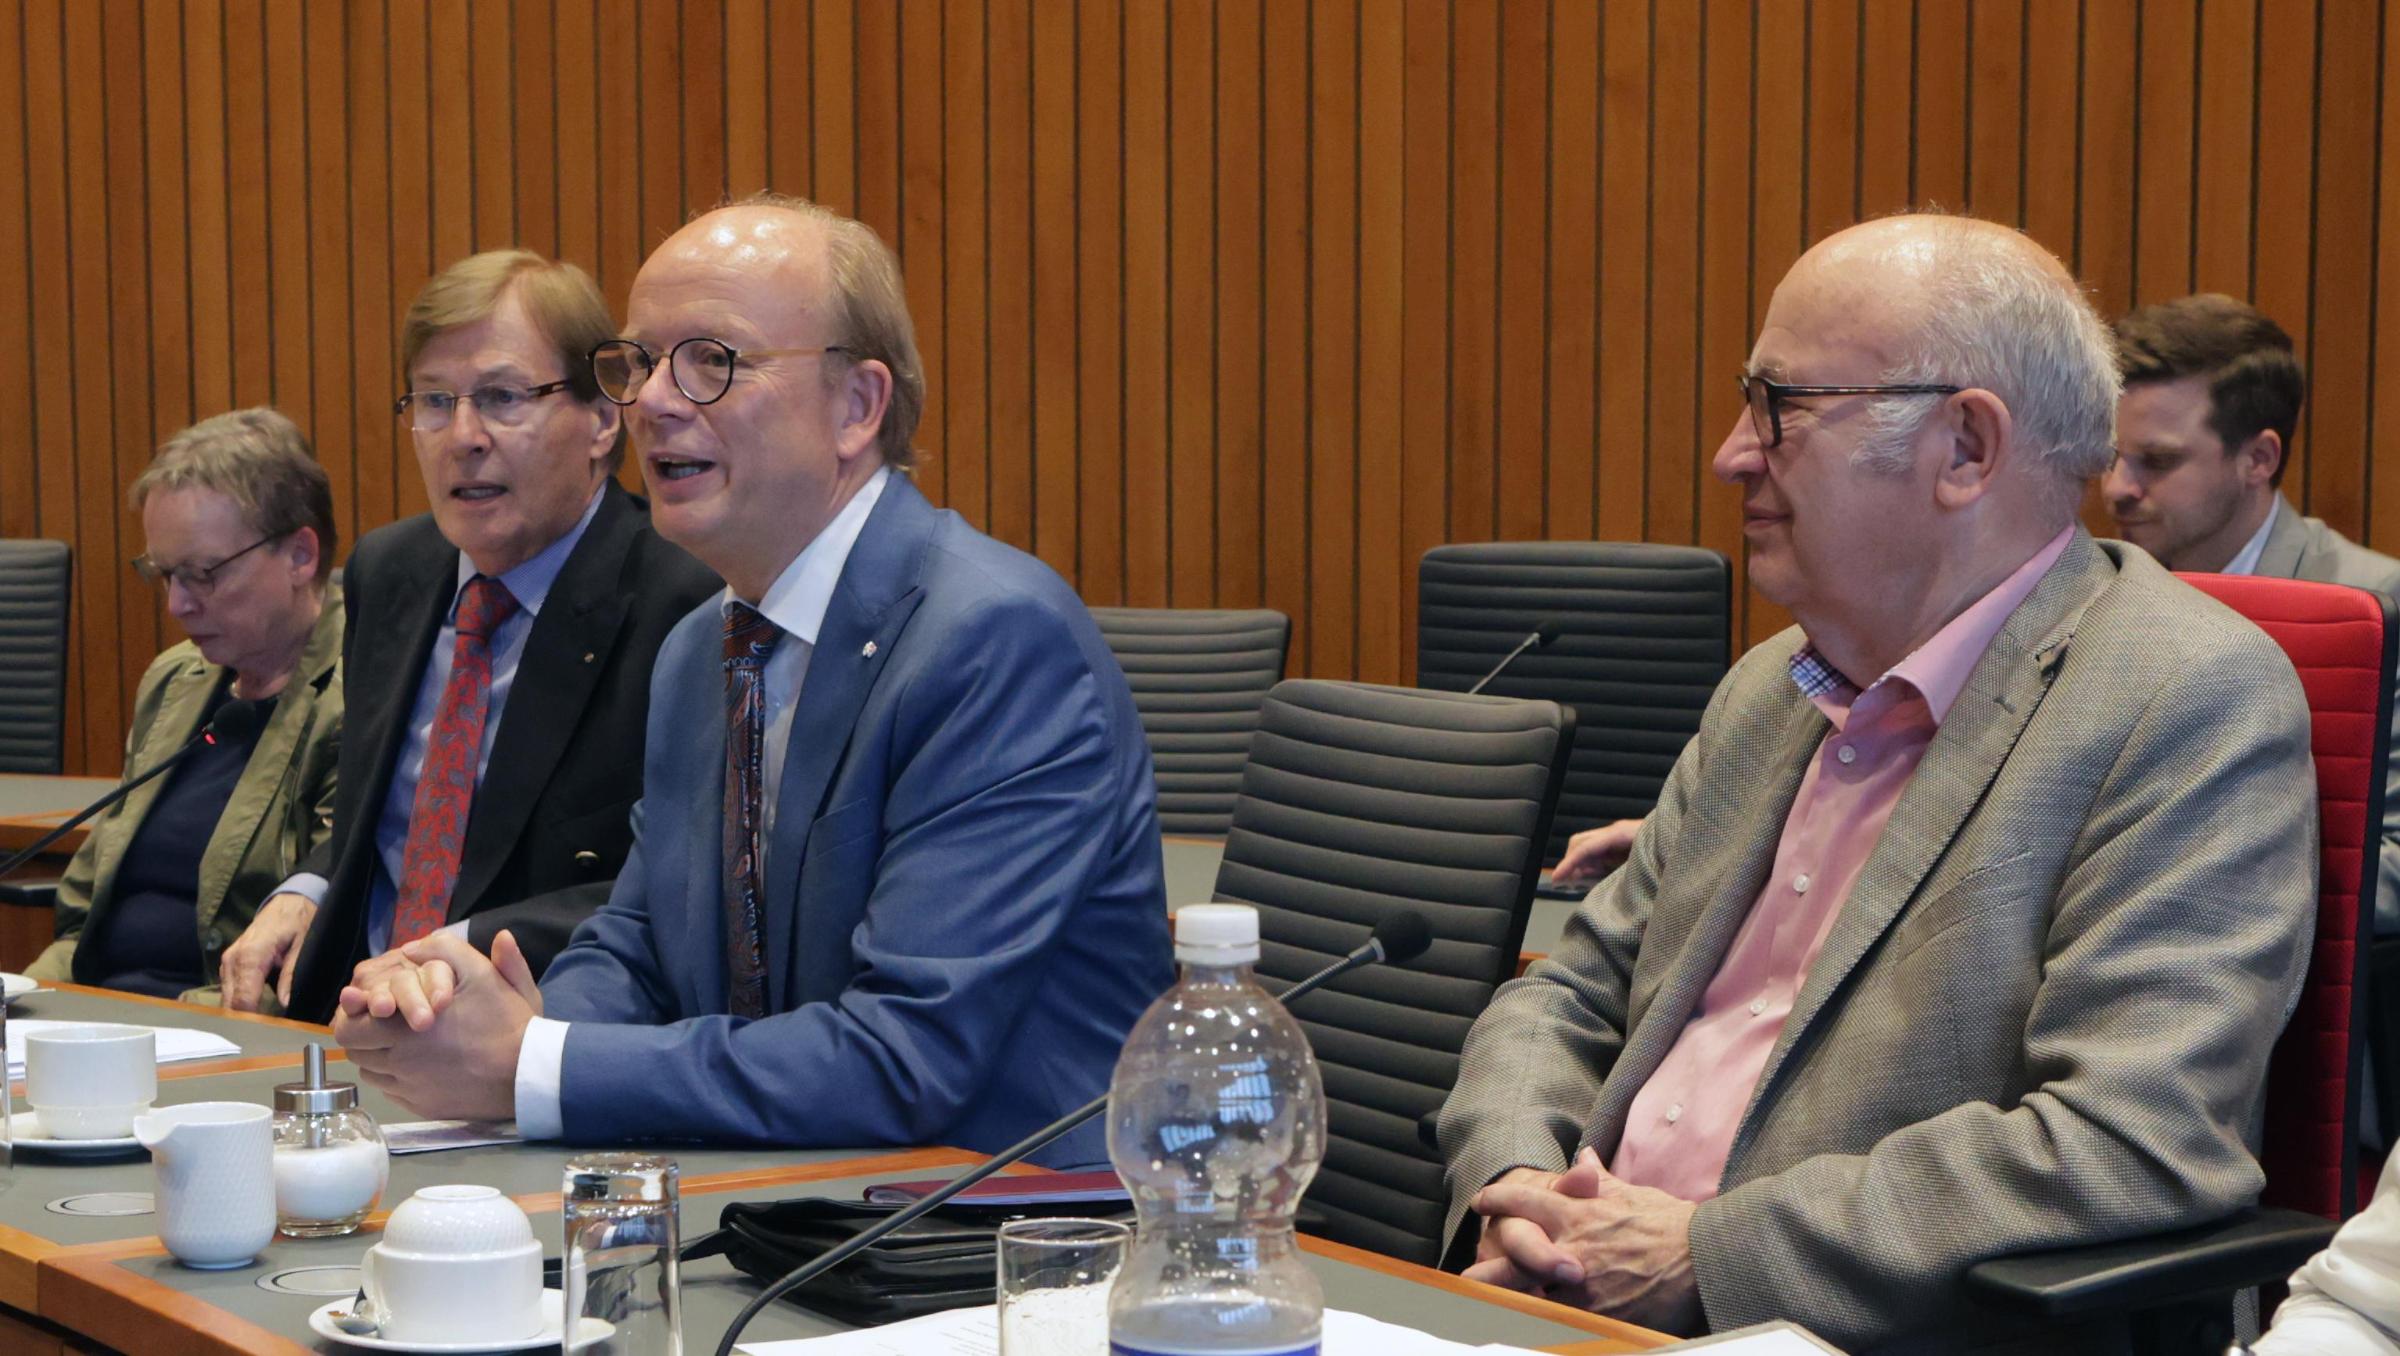 Landtagspräsident André Kuper berichtete den ehemaligen Abgeordneten zu aktuellen Themen und Entwicklungen der parlamentarischen Arbeit.